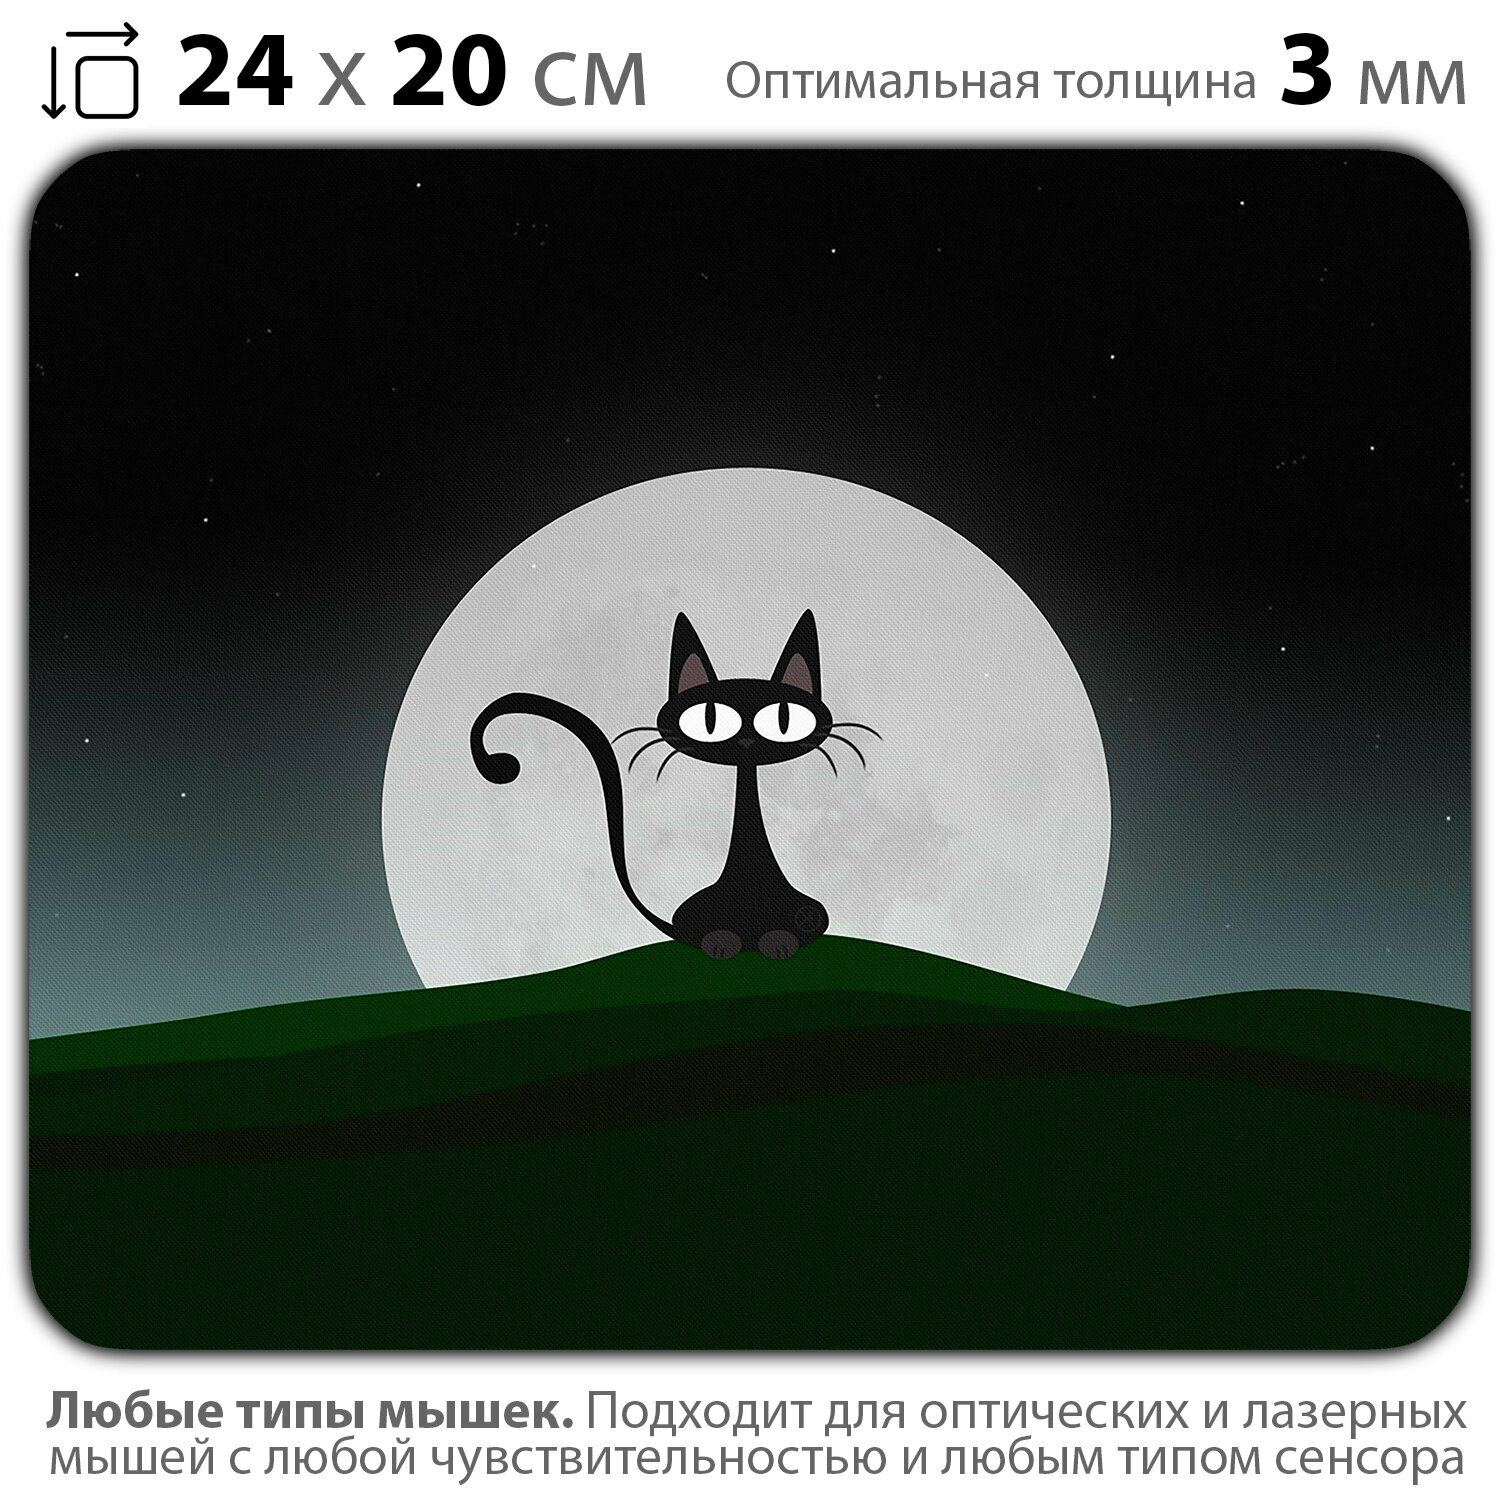 Коврик для мыши "Чёрный кот и луна" (24 x 20 см x 3 мм)